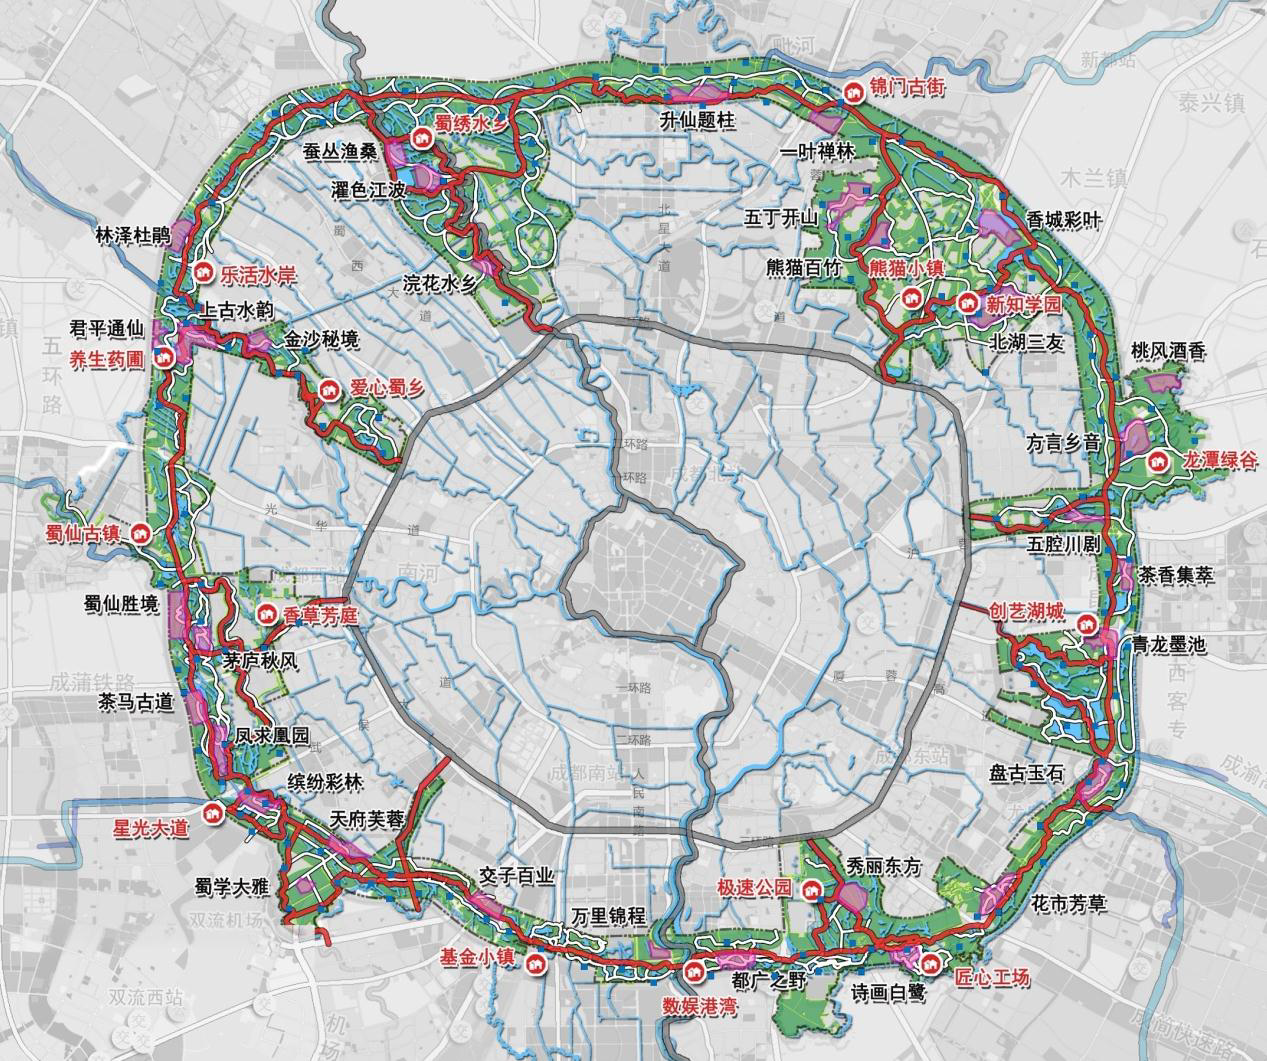 其中,锦城绿道项目建成后,将形成500公里绿道,4级配套服务体系(即16个